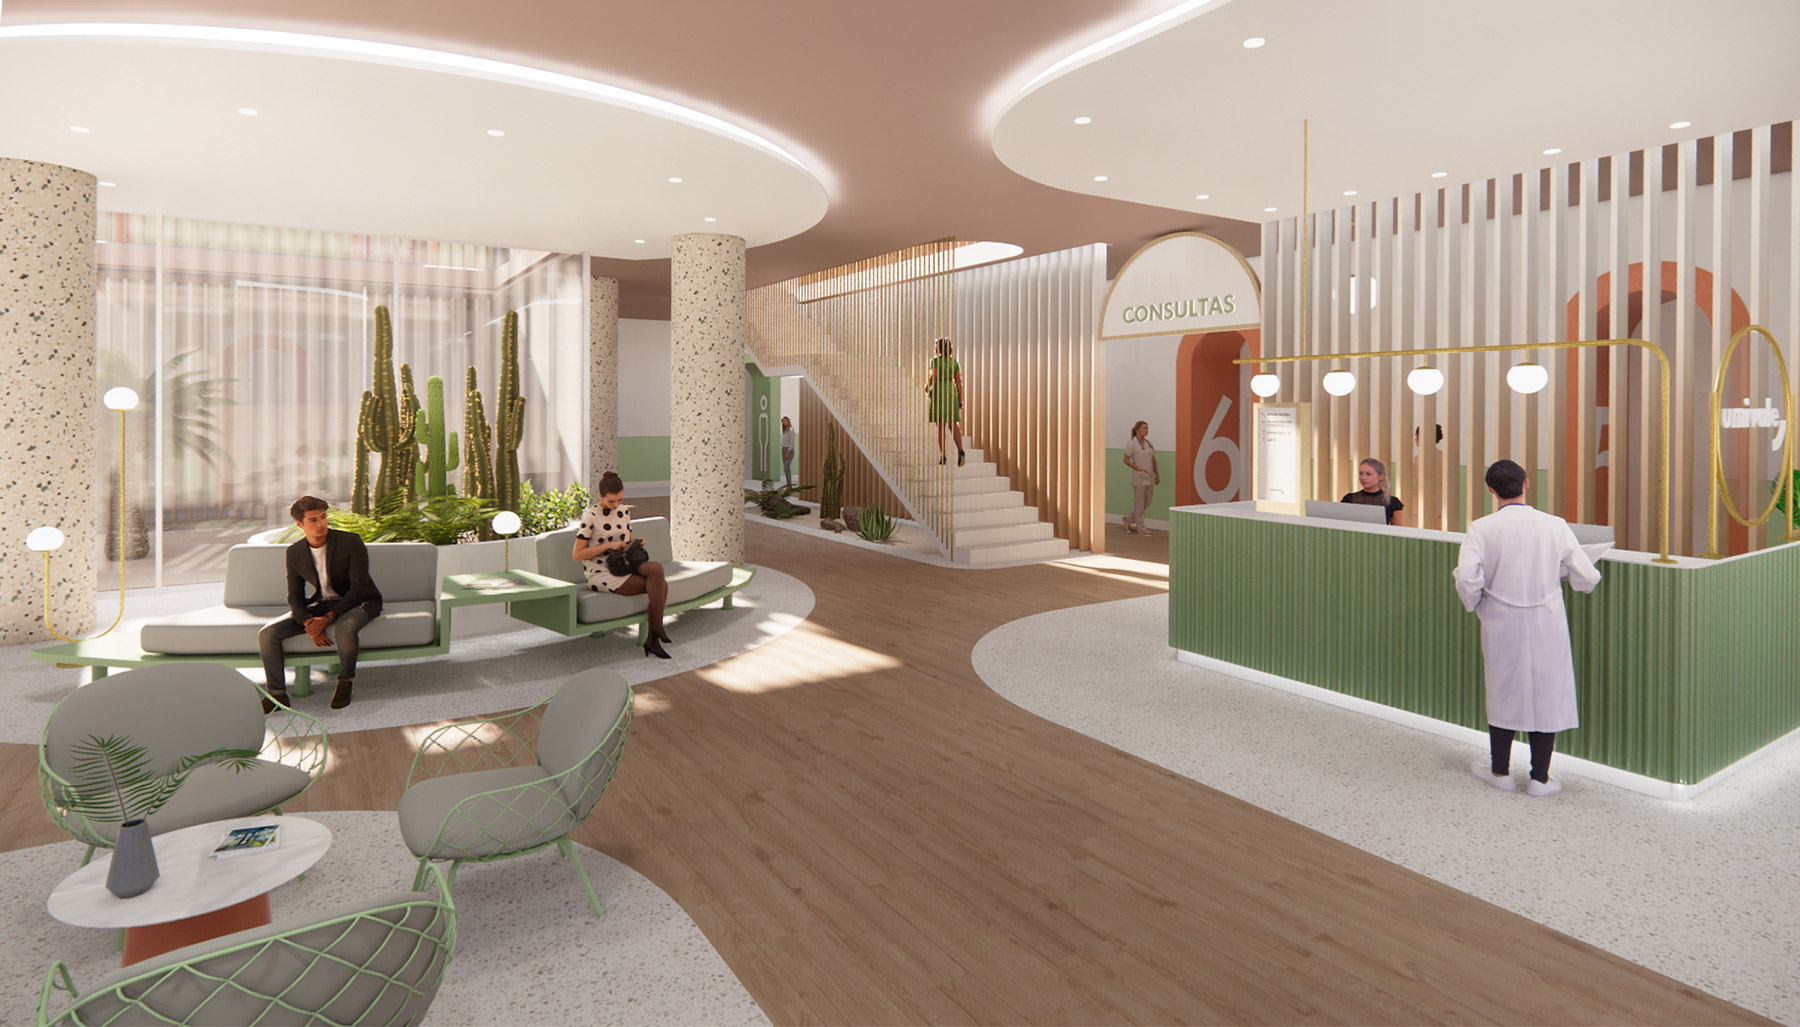 Nayra Iglesias propone un nuevo enfoque para los espacios hospitalarios con este proyecto para una clínica privada en Gran Canaria